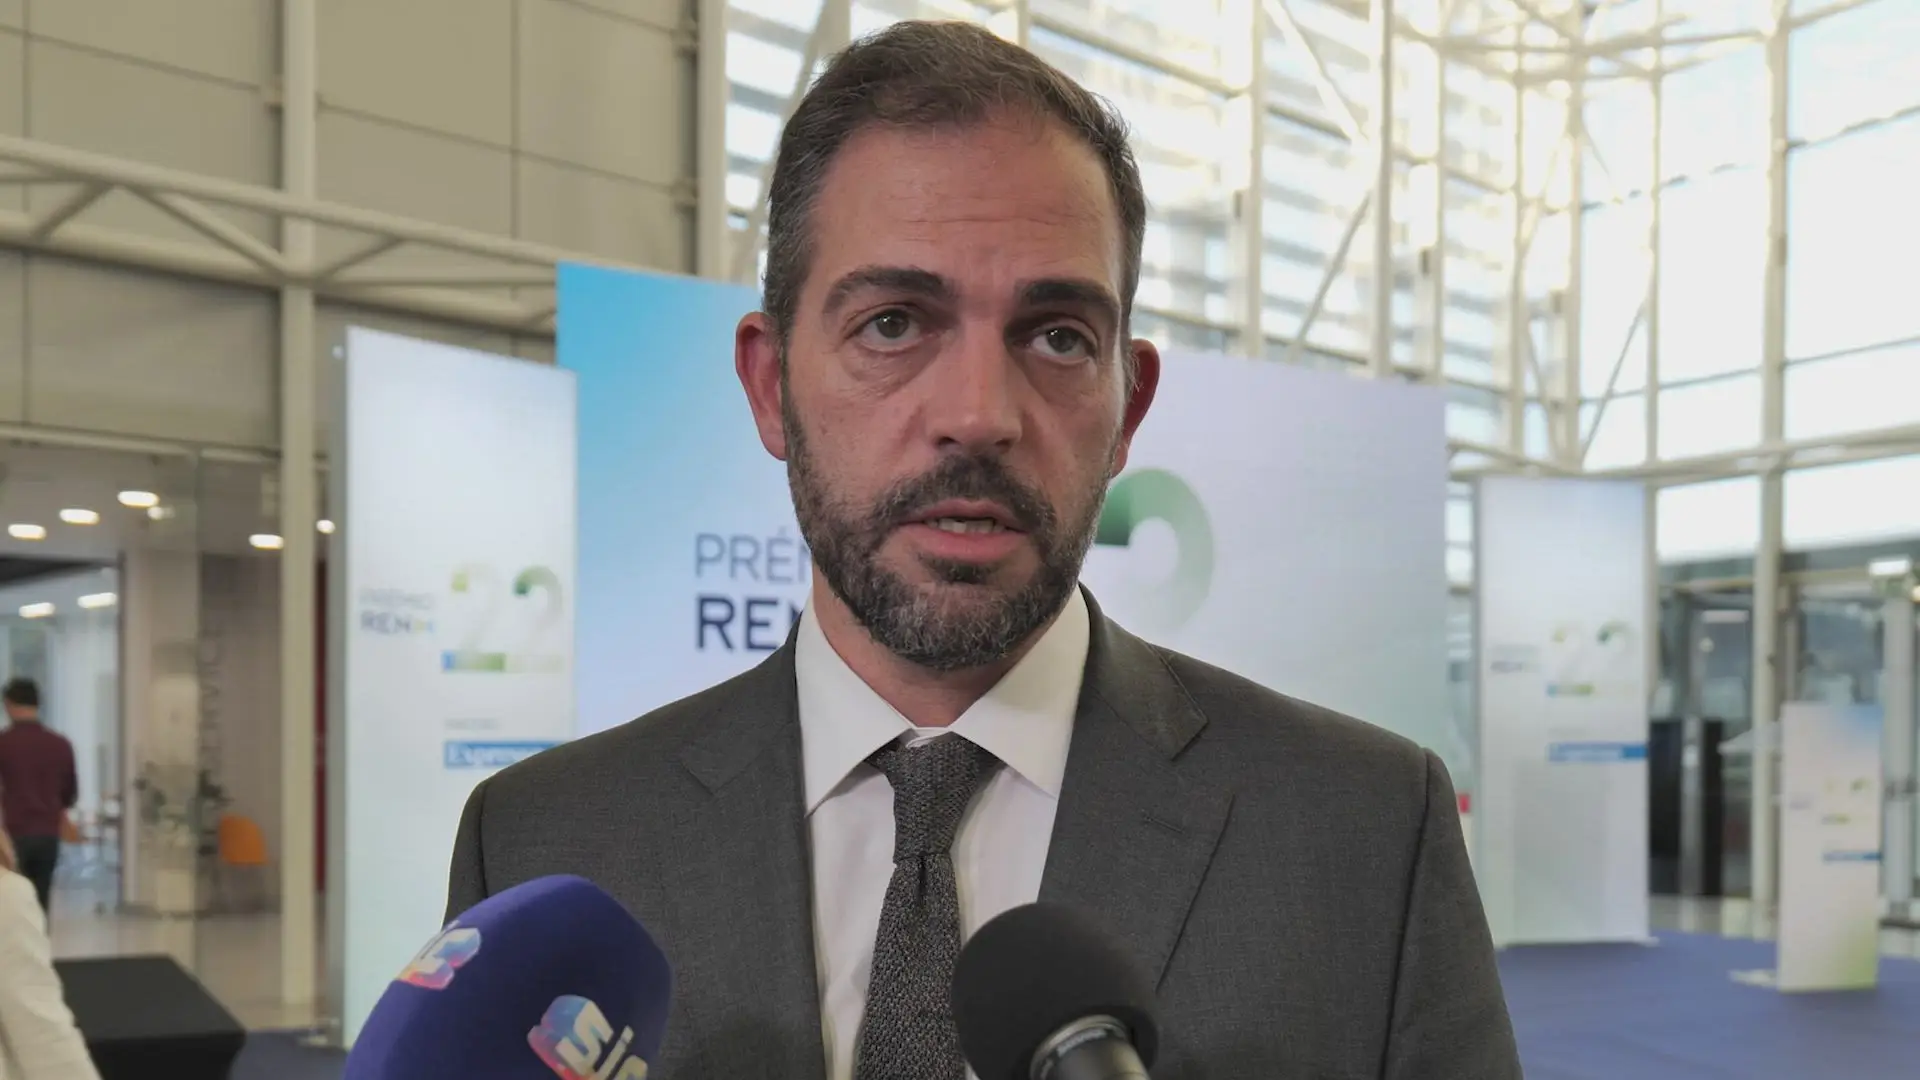 Ministro do Ambiente: "Os preços da energia vão pesar menos na carteira dos portugueses em 2023"